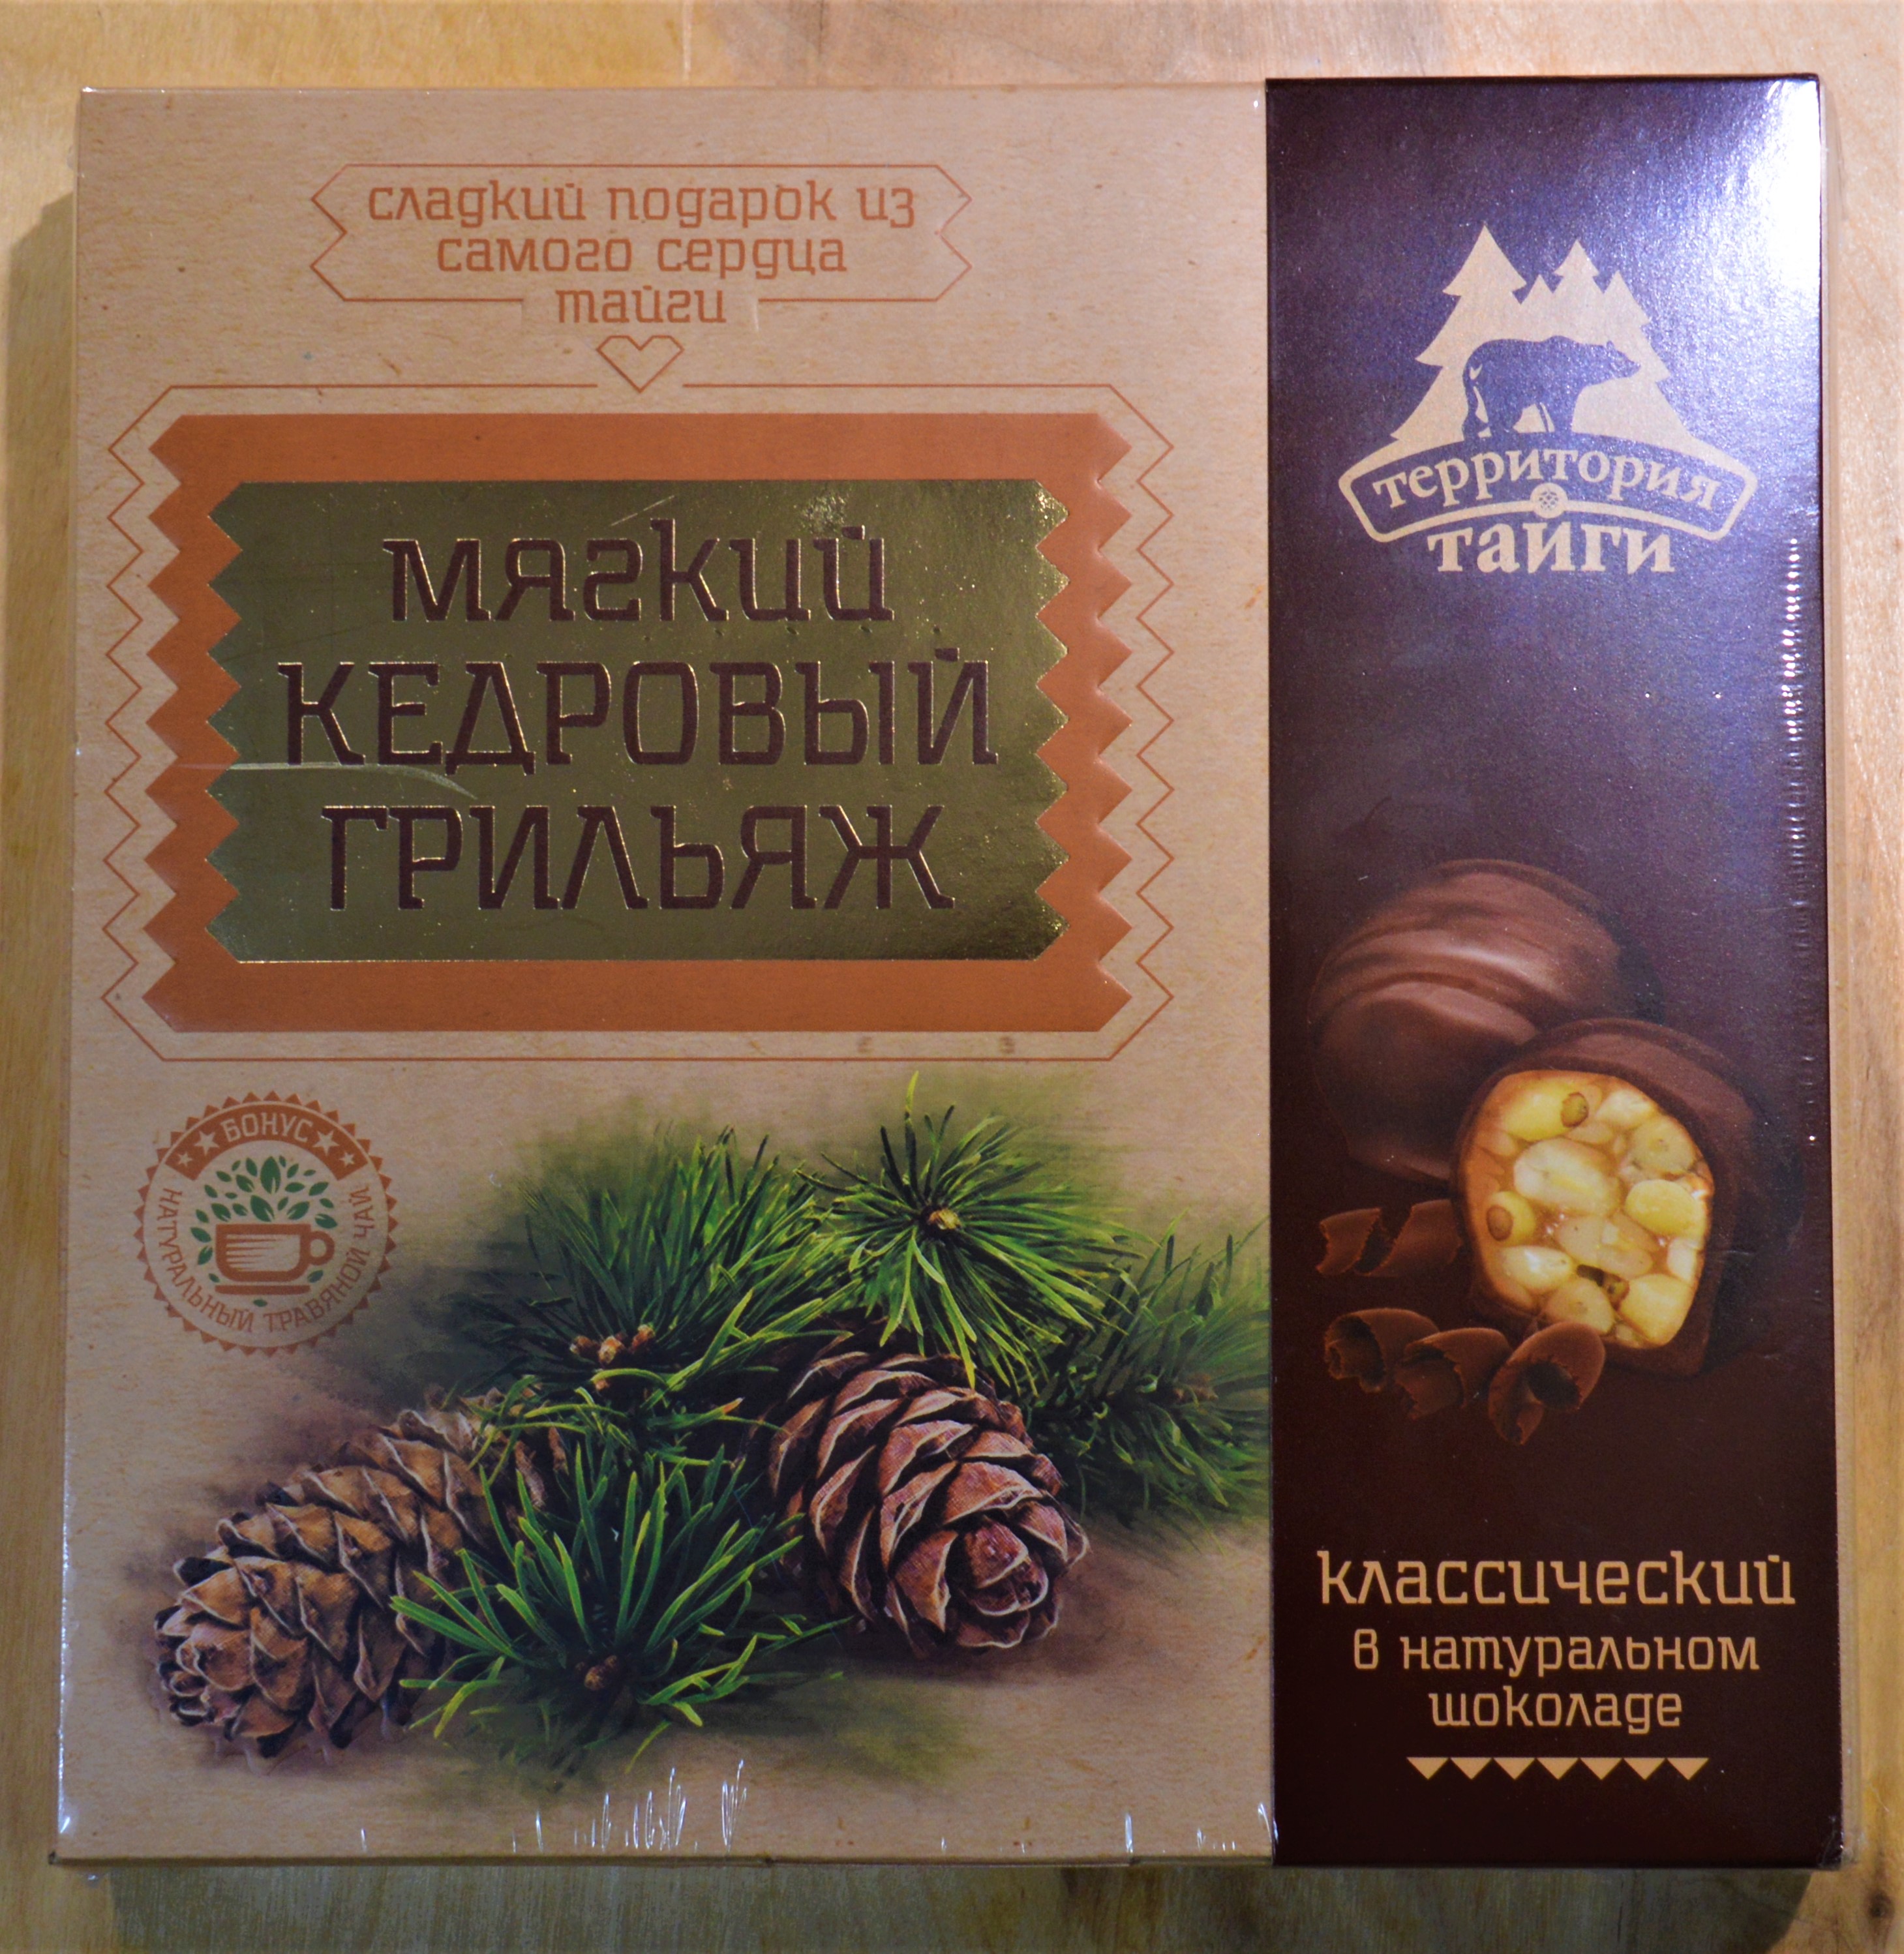 Конфеты Кедровый грильяж в шоколаде классический 120 гр.Томск, Территория тайги